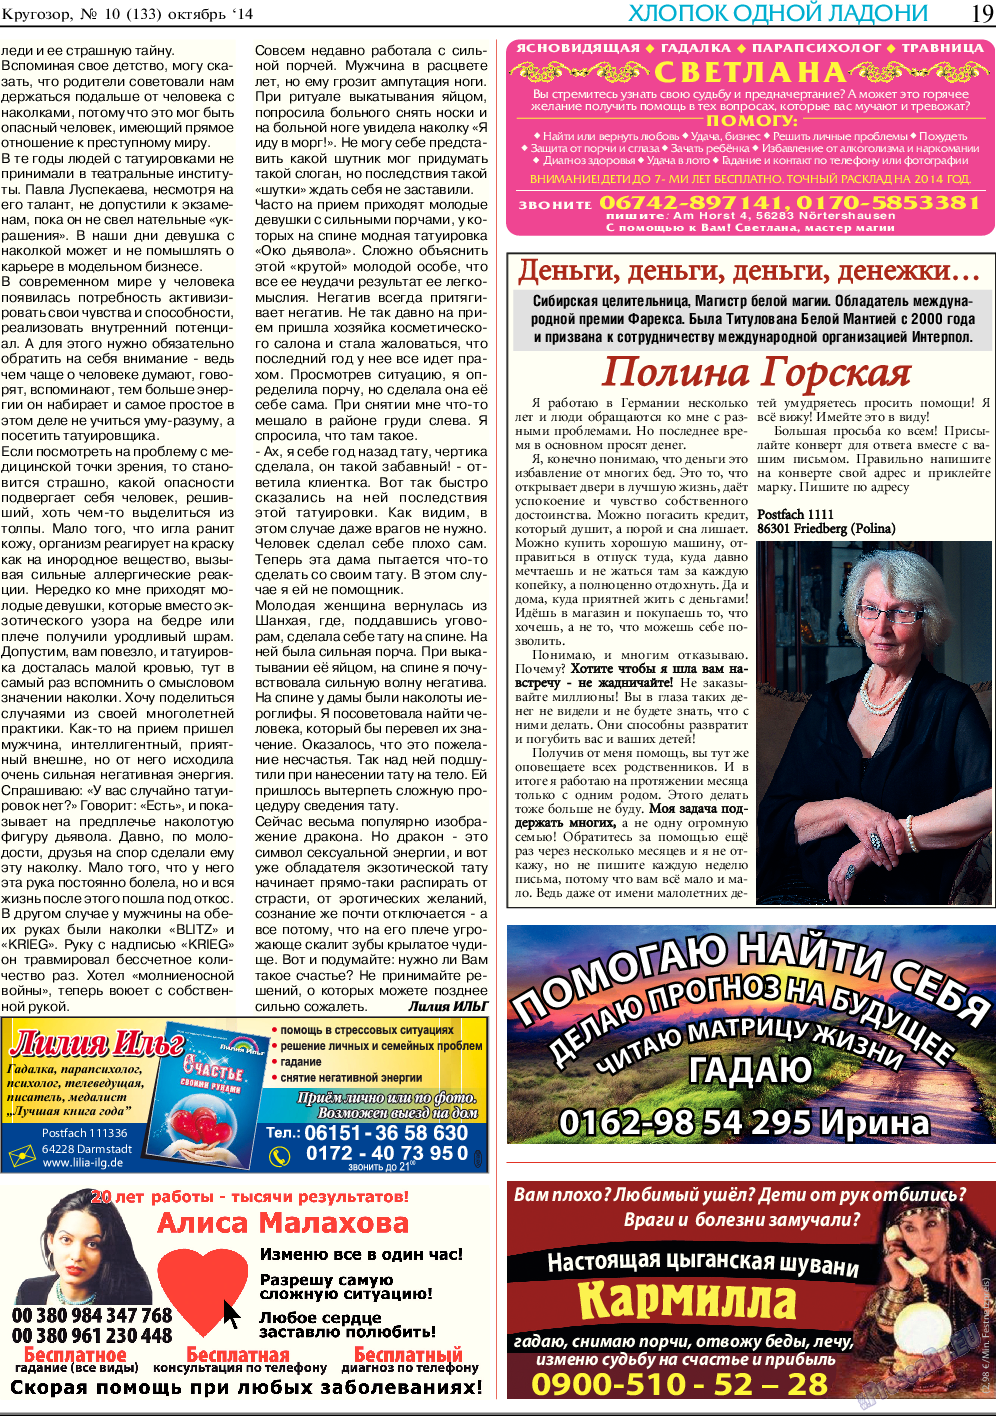 Кругозор (газета). 2014 год, номер 10, стр. 19